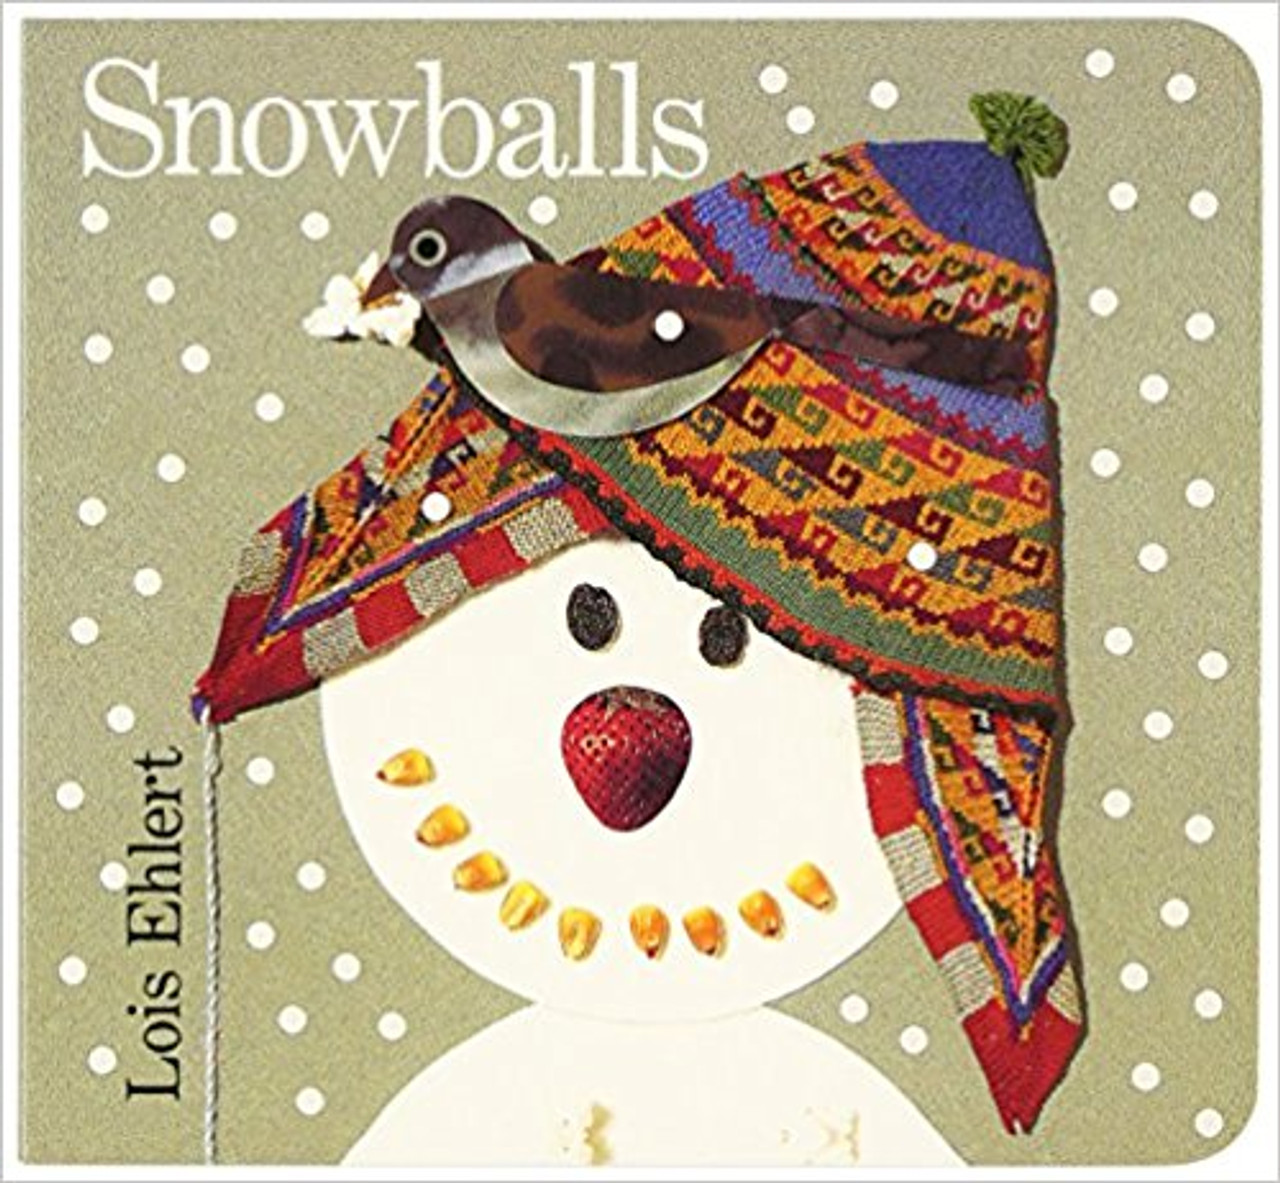 Snowballs by Lois Elhert